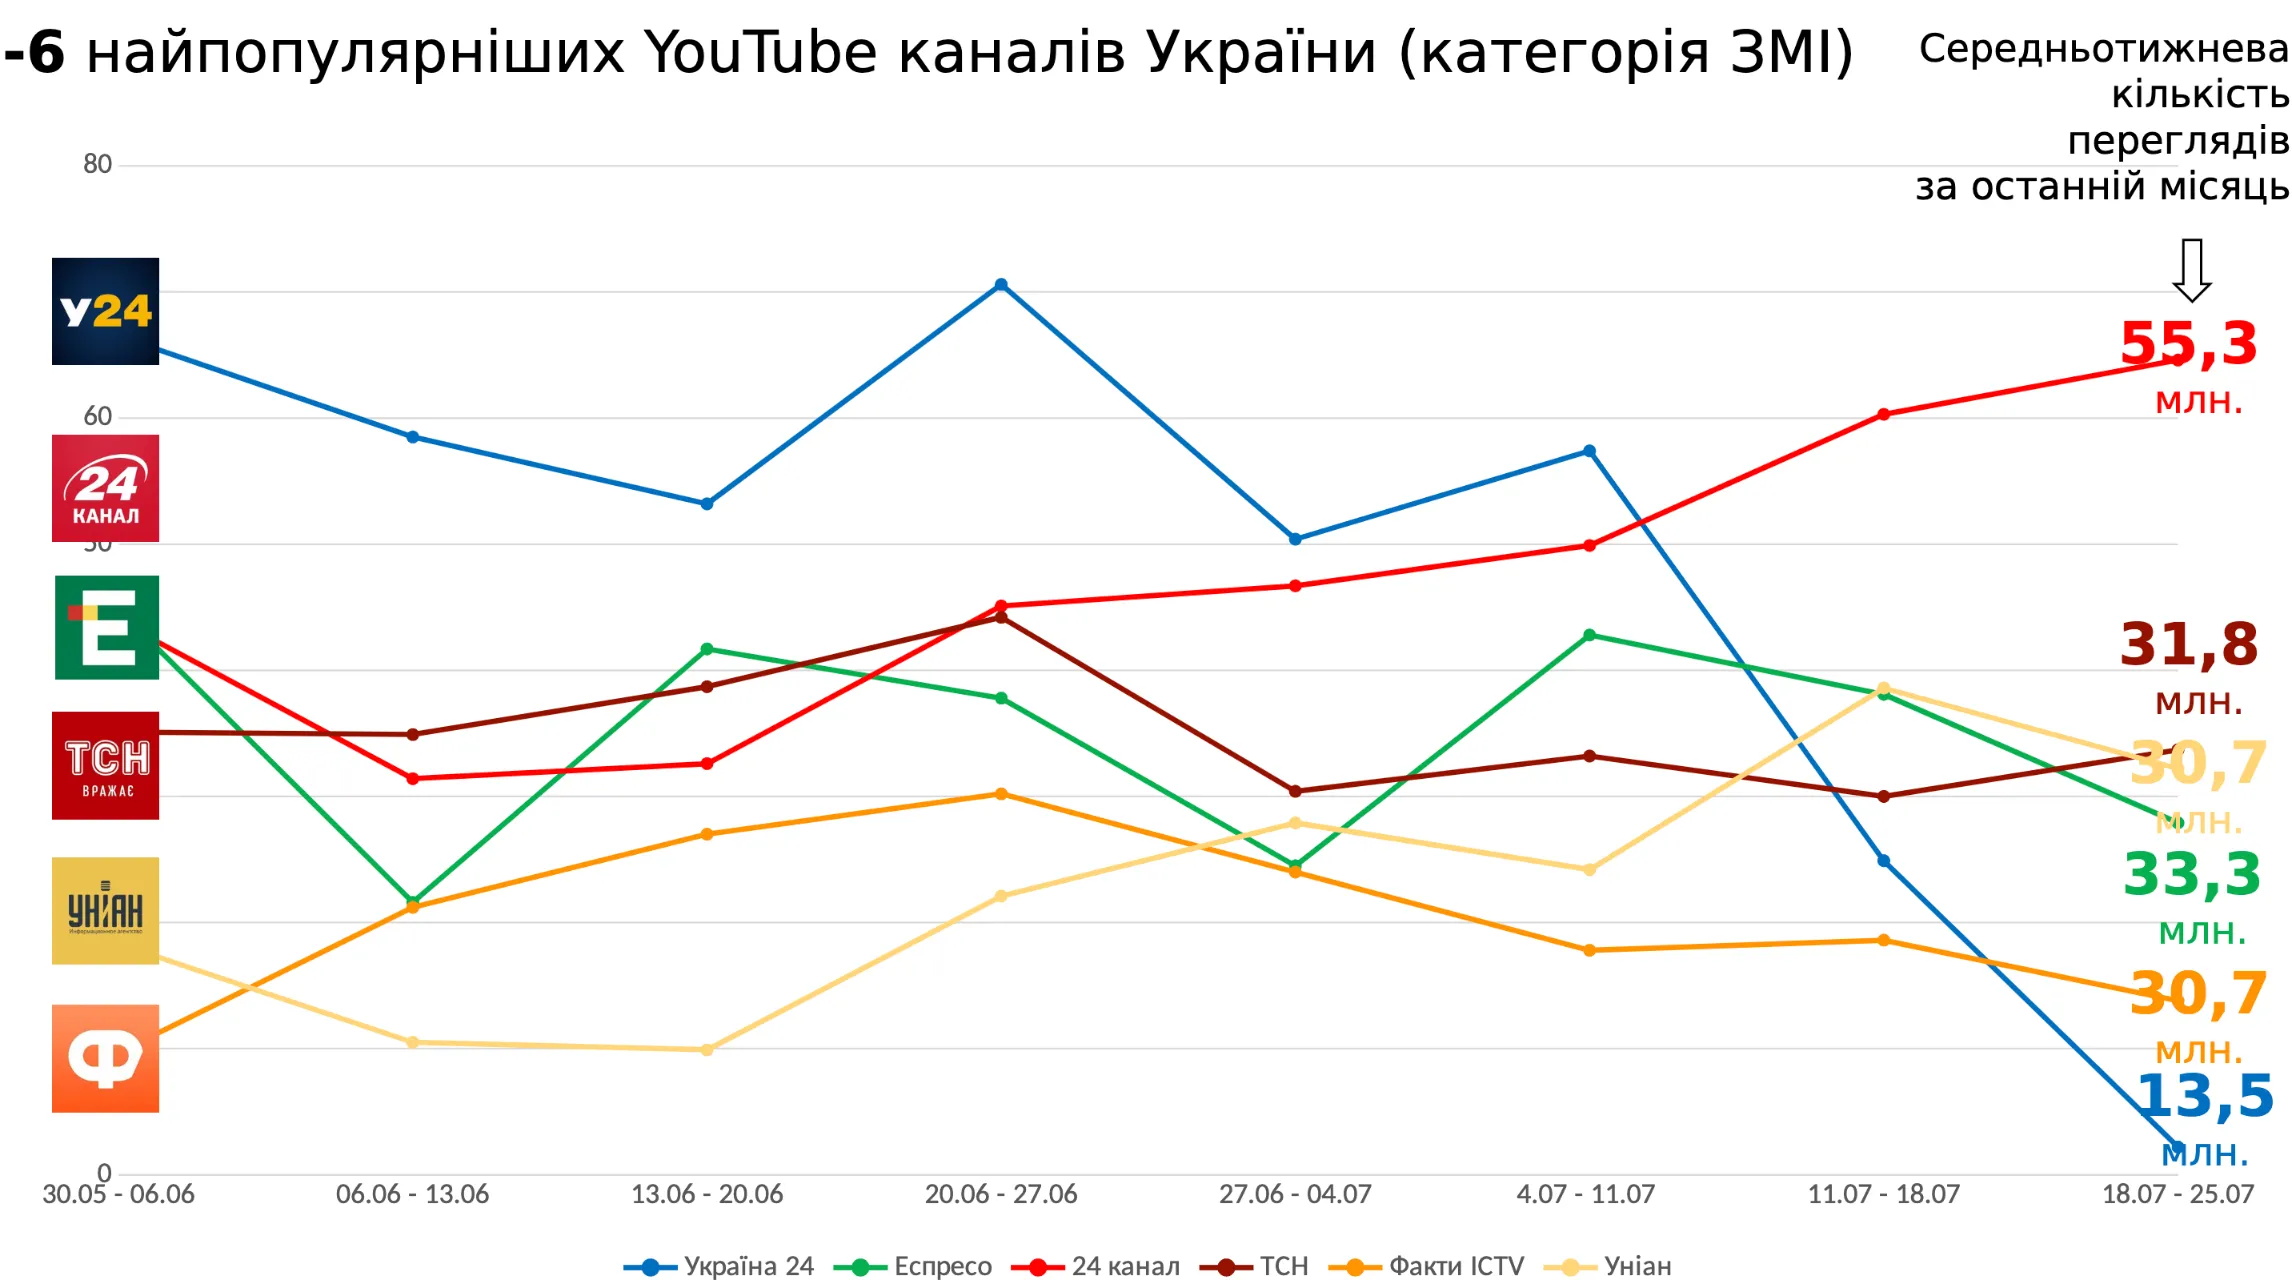 24 канал самый популярный среди украинских СМИ в YouTube